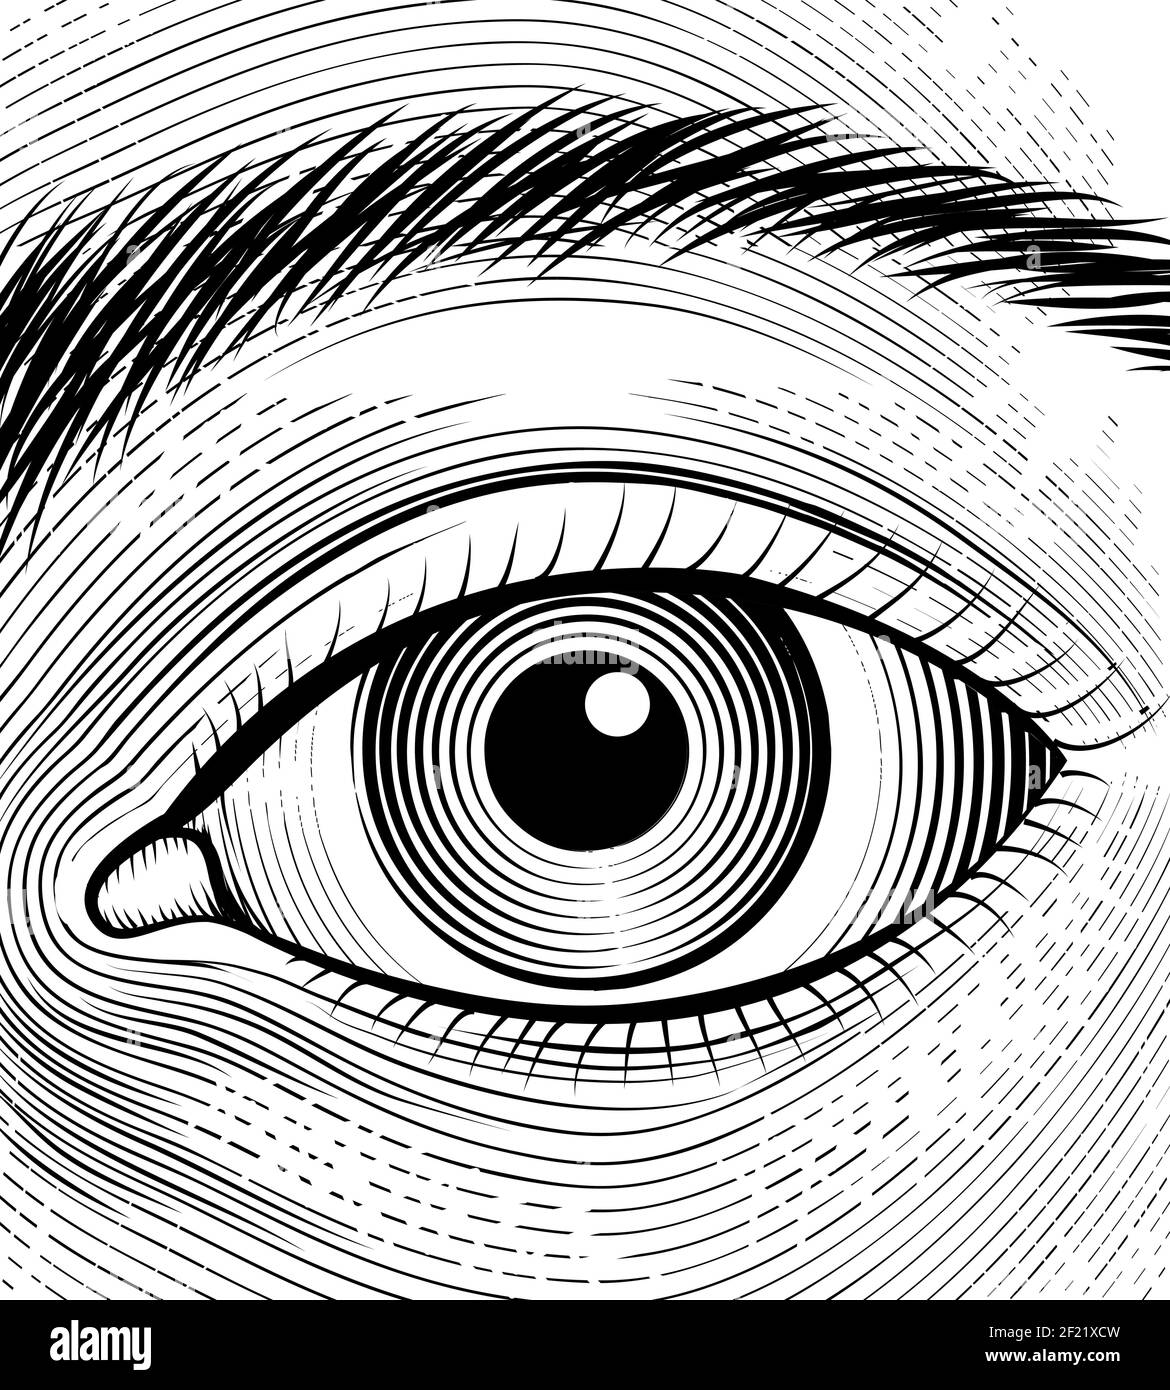 Incisione dell'occhio umano. Gli occhi dello schizzo si rifocerano su uno sfondo bianco. Illustrazione vettoriale Illustrazione Vettoriale